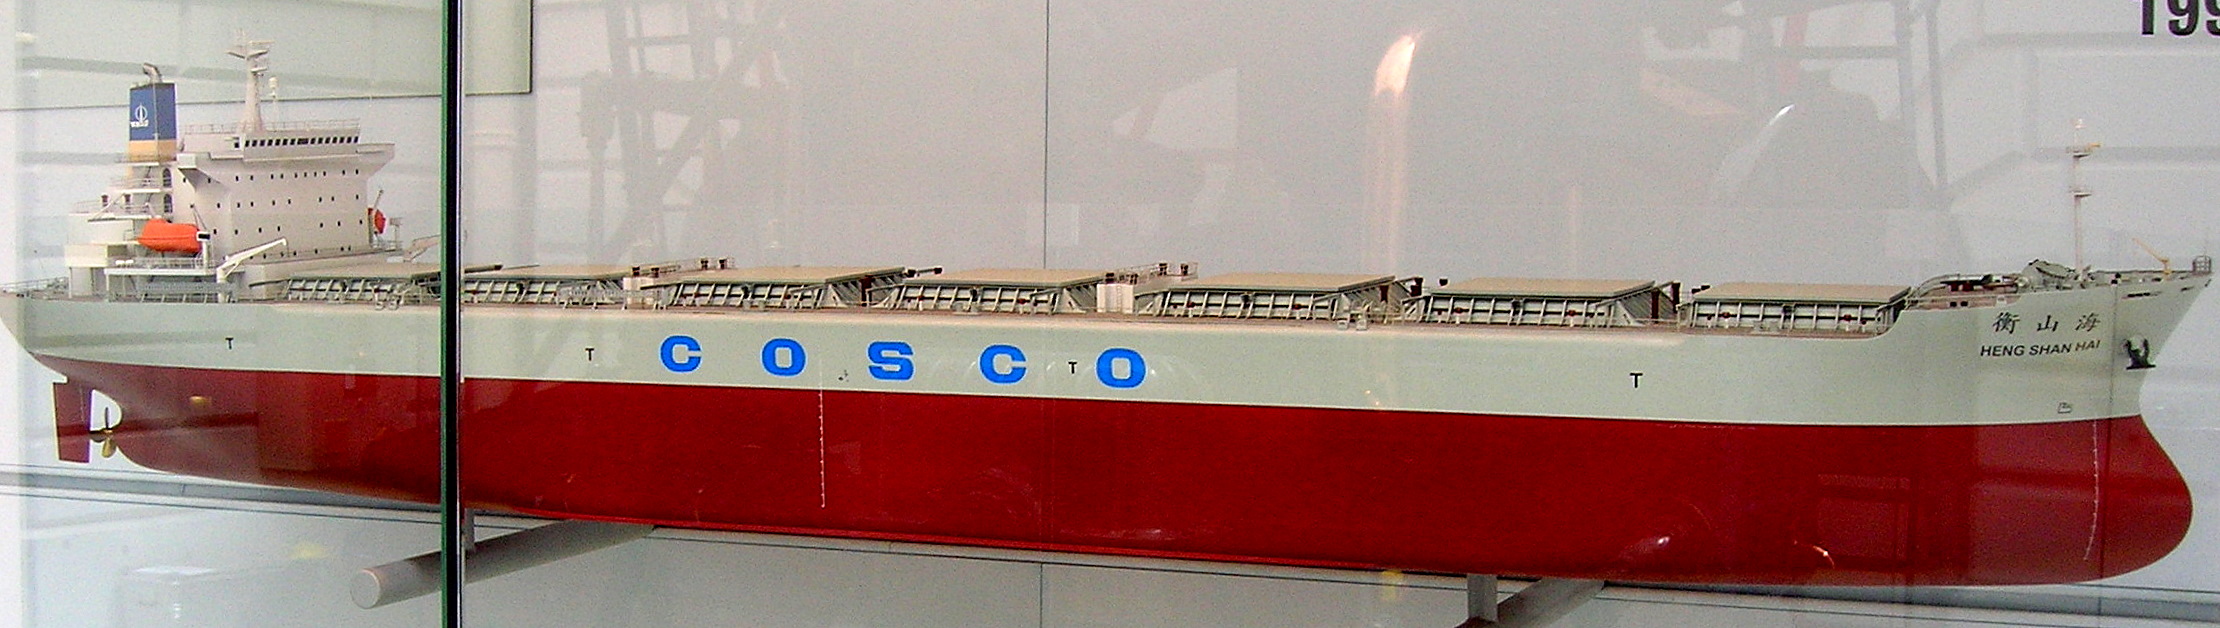 Model of bulk carrier